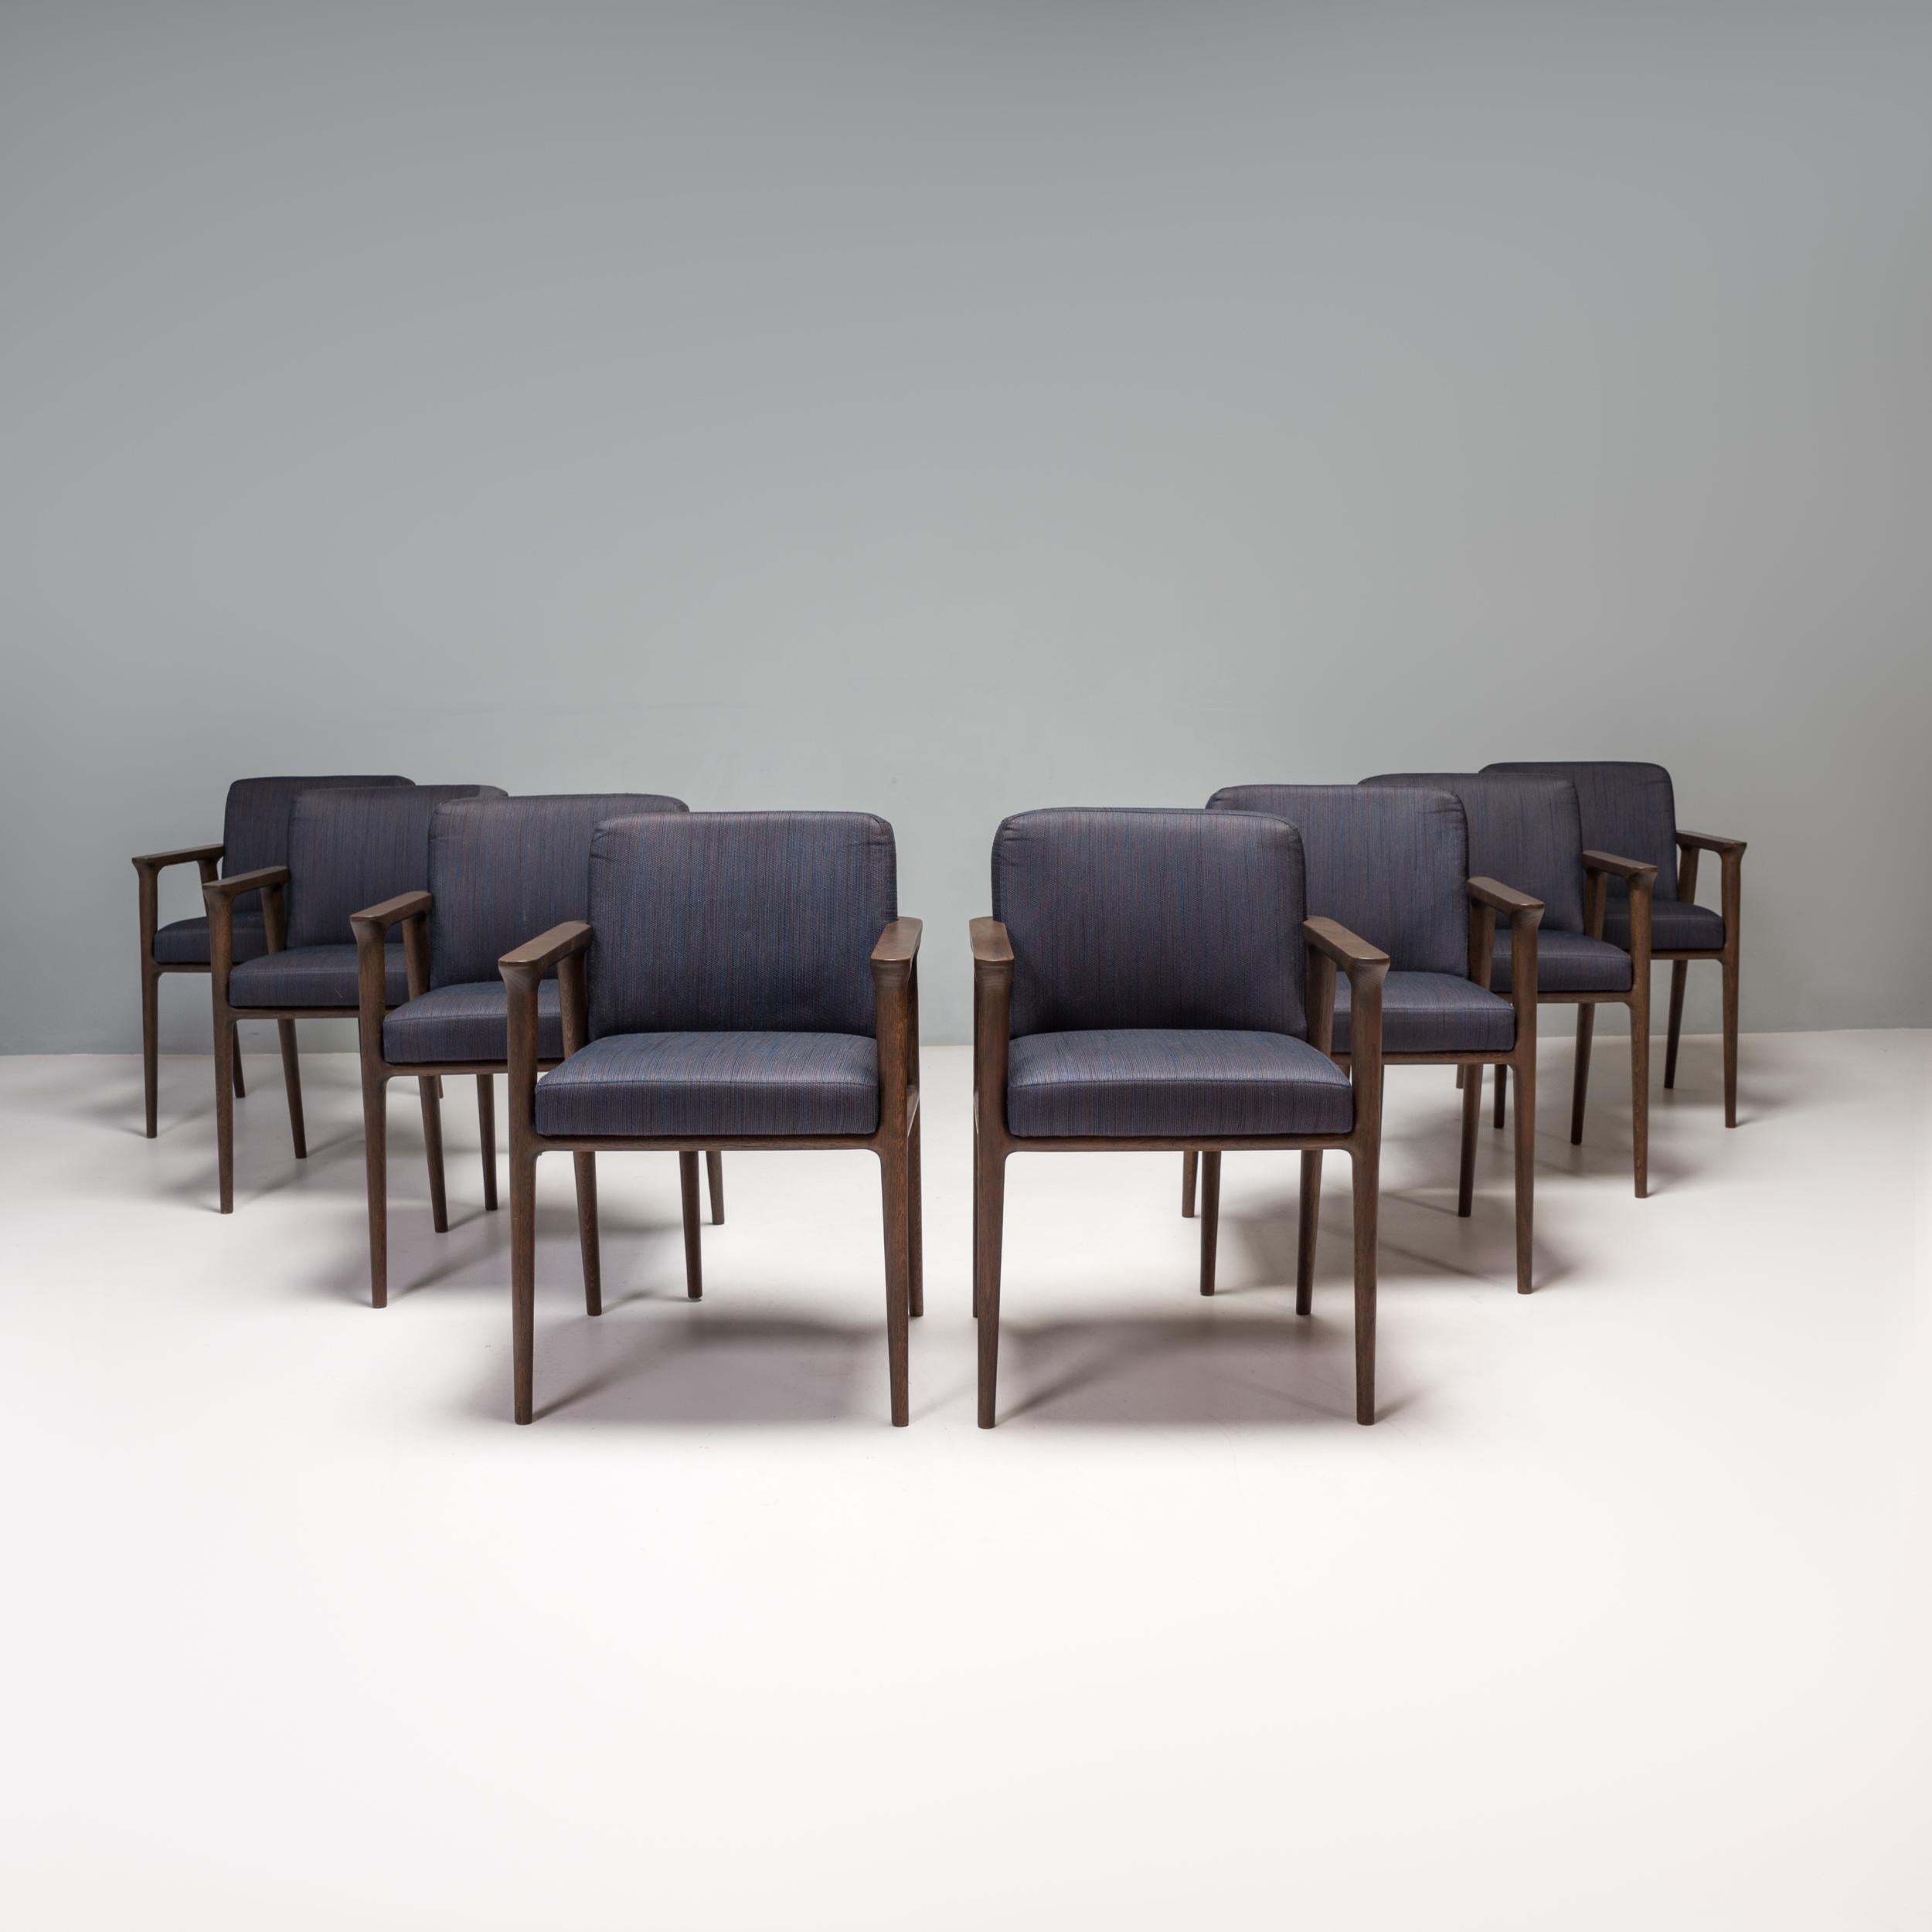 Die ursprünglich von Marcel Wanders für Moooi im Jahr 2013 entworfene Zio-Serie strahlt klassische Eleganz aus.

Die Esszimmerstühle sind aus wengegebeiztem Eichenholz gefertigt und verfügen über konisch zulaufende Beine und eine abgerundete